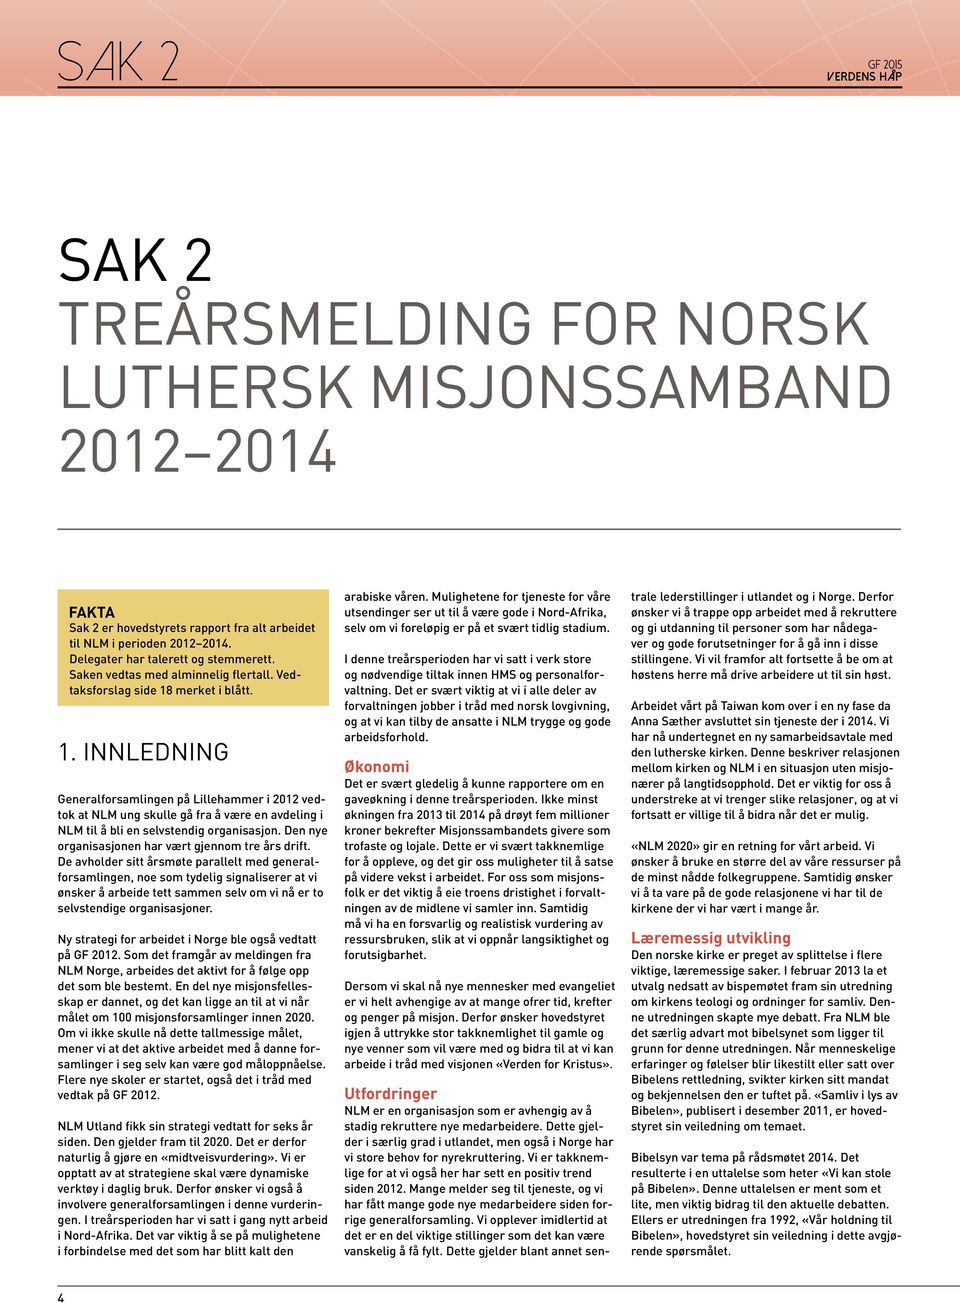 merket i blått. 1. INNLEDNING Generalforsamlingen på Lillehammer i 2012 vedtok at NLM ung skulle gå fra å være en avdeling i NLM til å bli en selvstendig organisasjon.